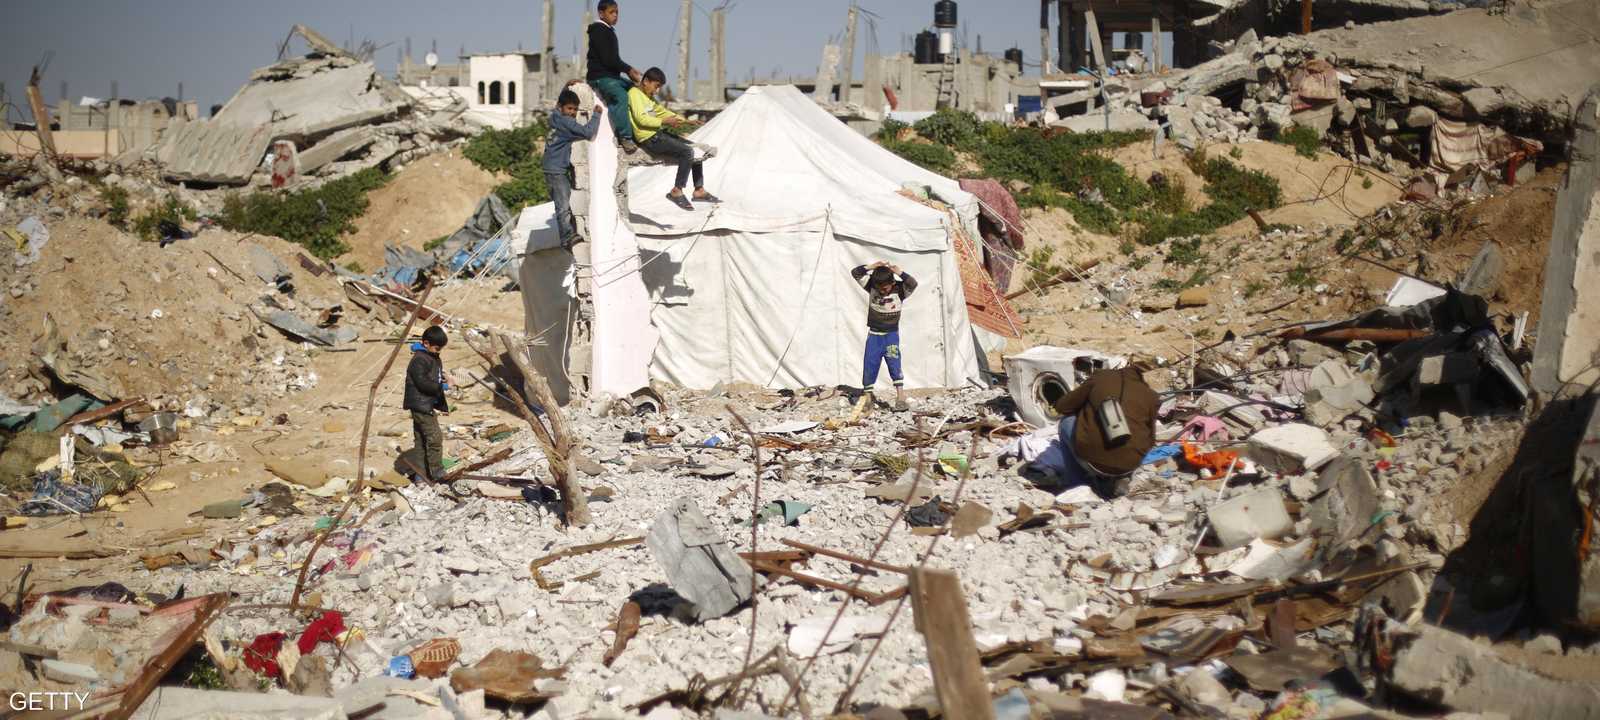 جانب من آثار الدمار في قطاع غزة من جراء الحرب الإسرائيلية الأخيرة.